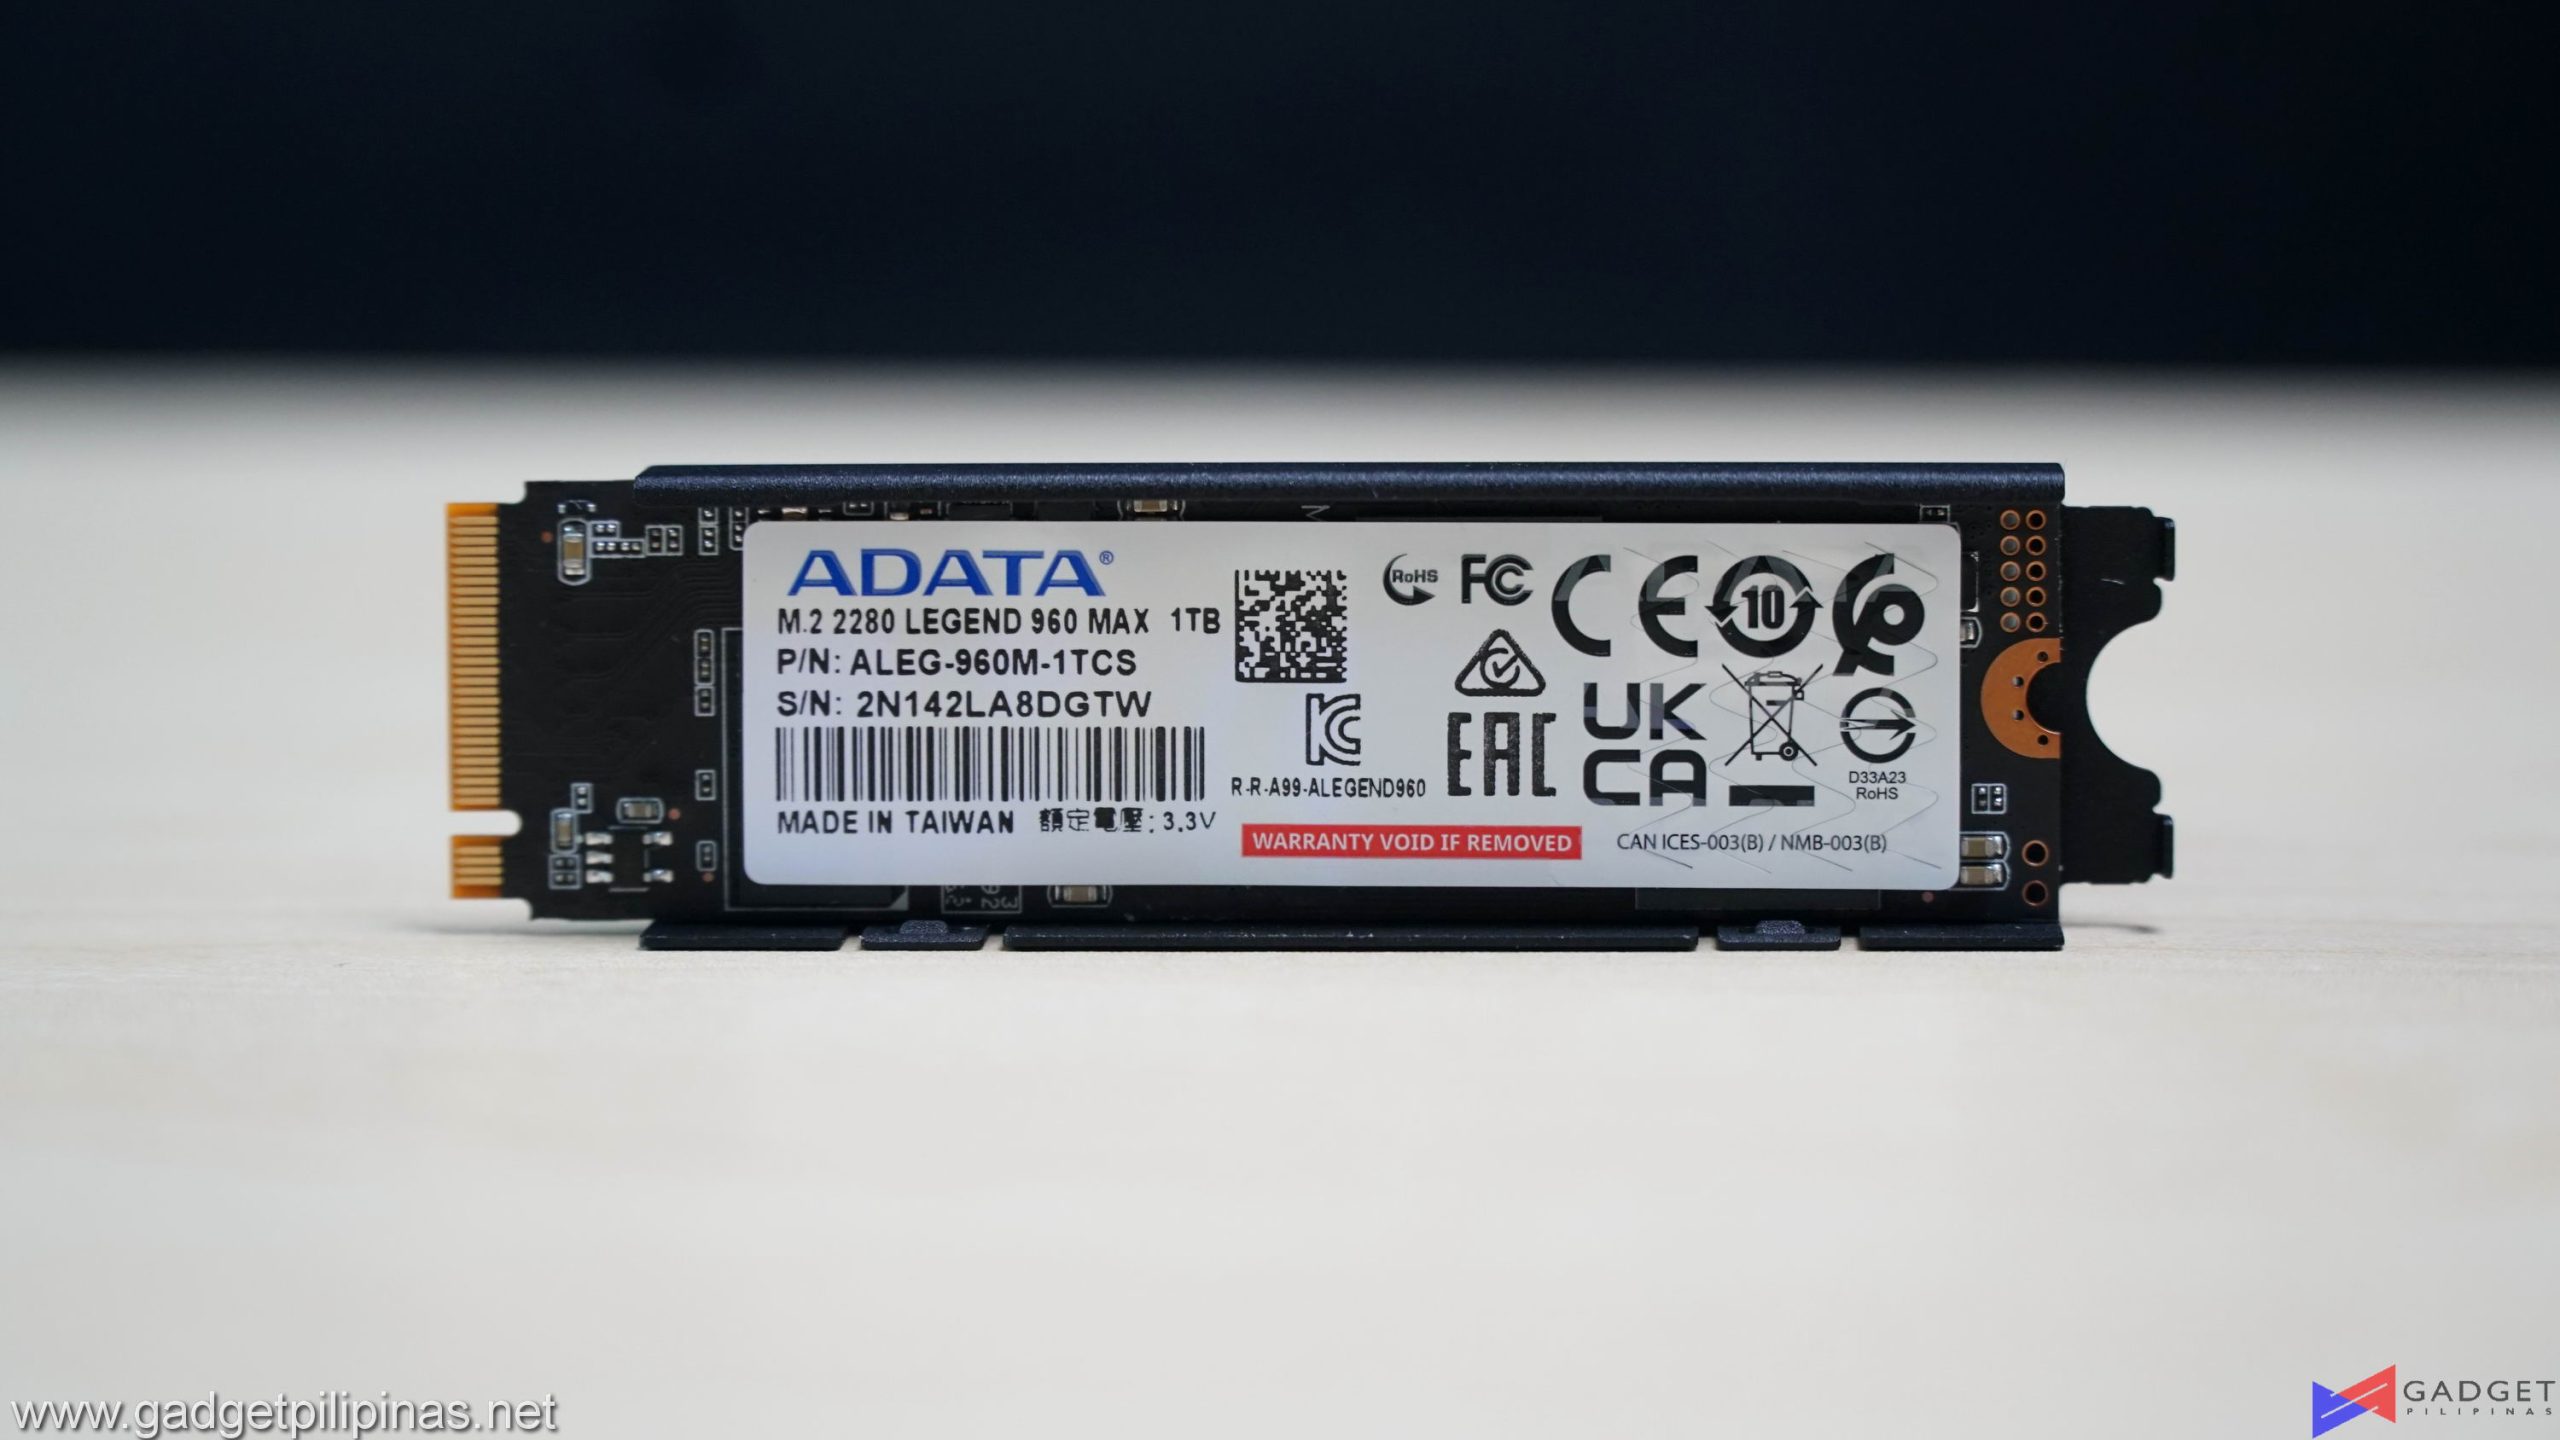 ADATA Legend 960 Max 1TB SSD Review 026